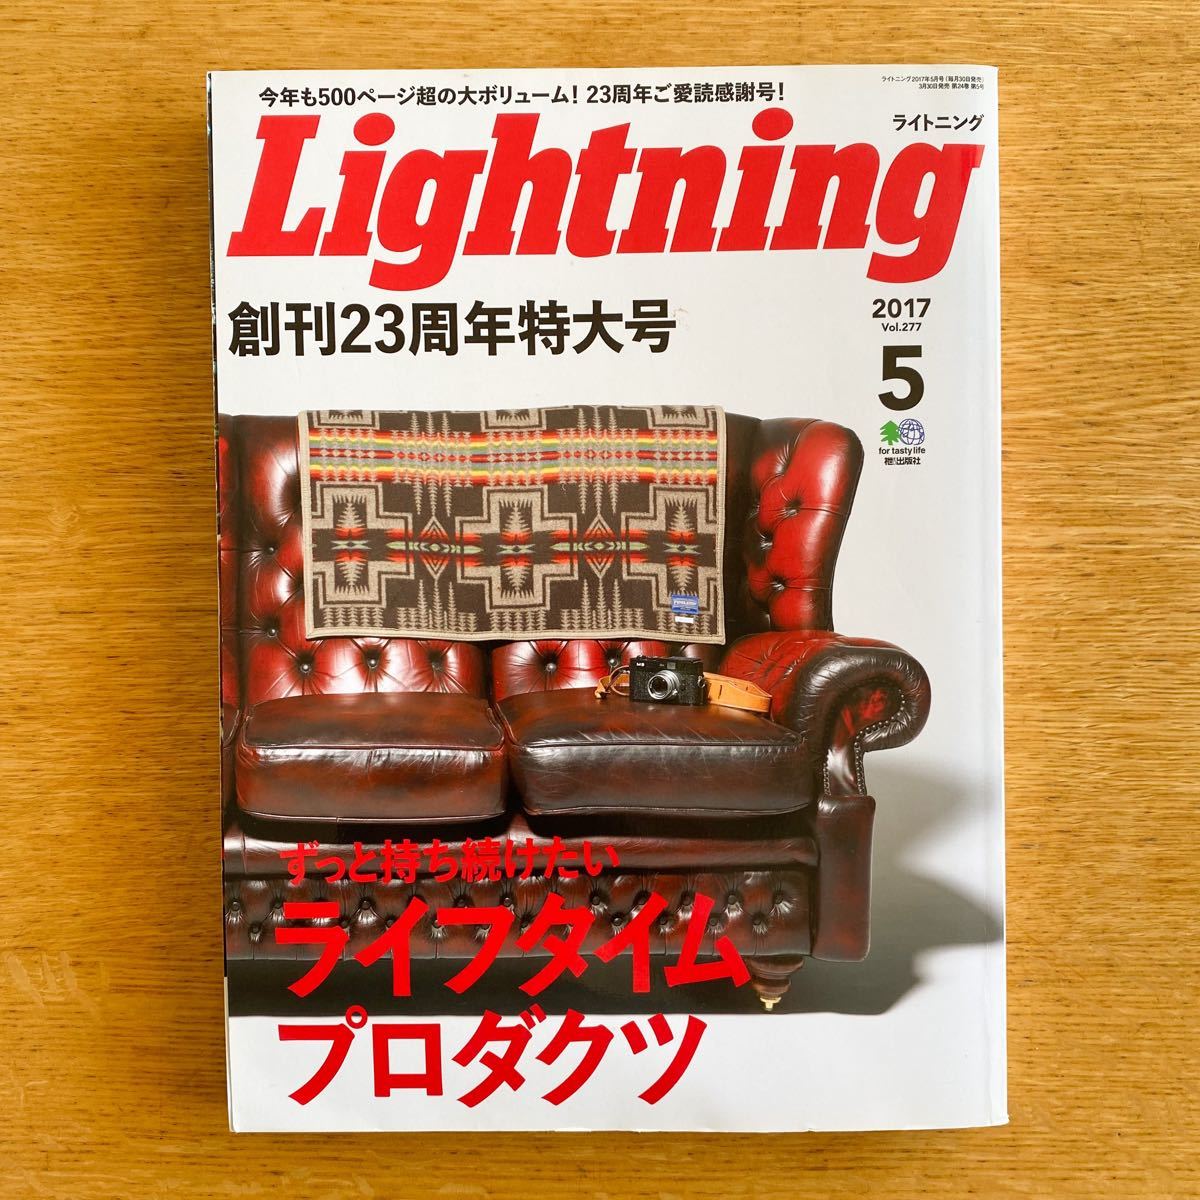 ライトニング Lightning 創刊23周年特大号 2017 vol.277 